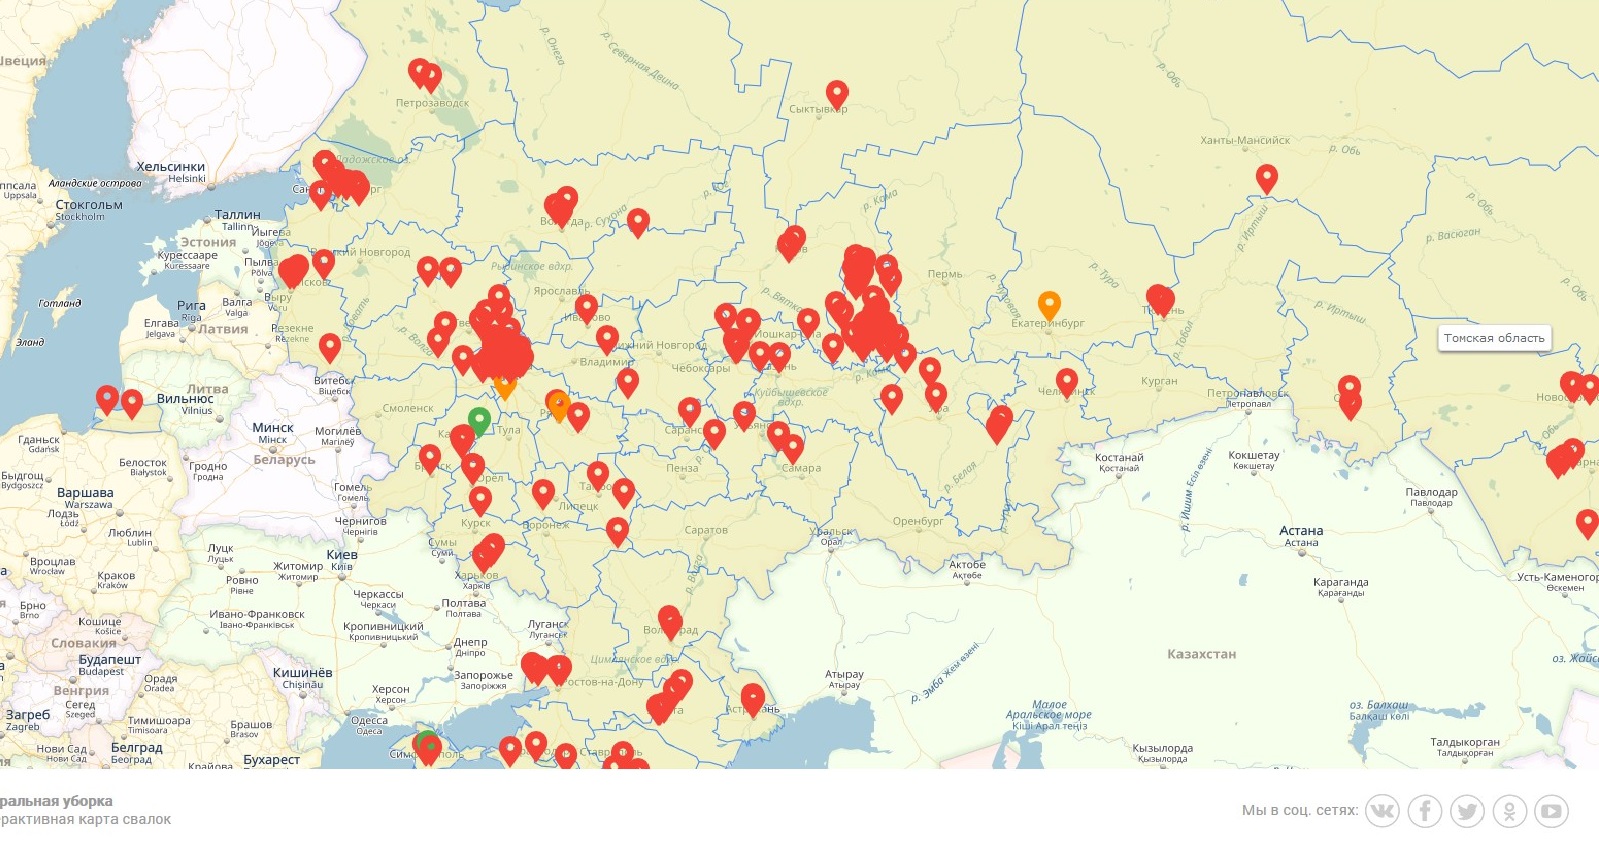 ОНФ запустил интерактивную карту незаконных свалок по всей России